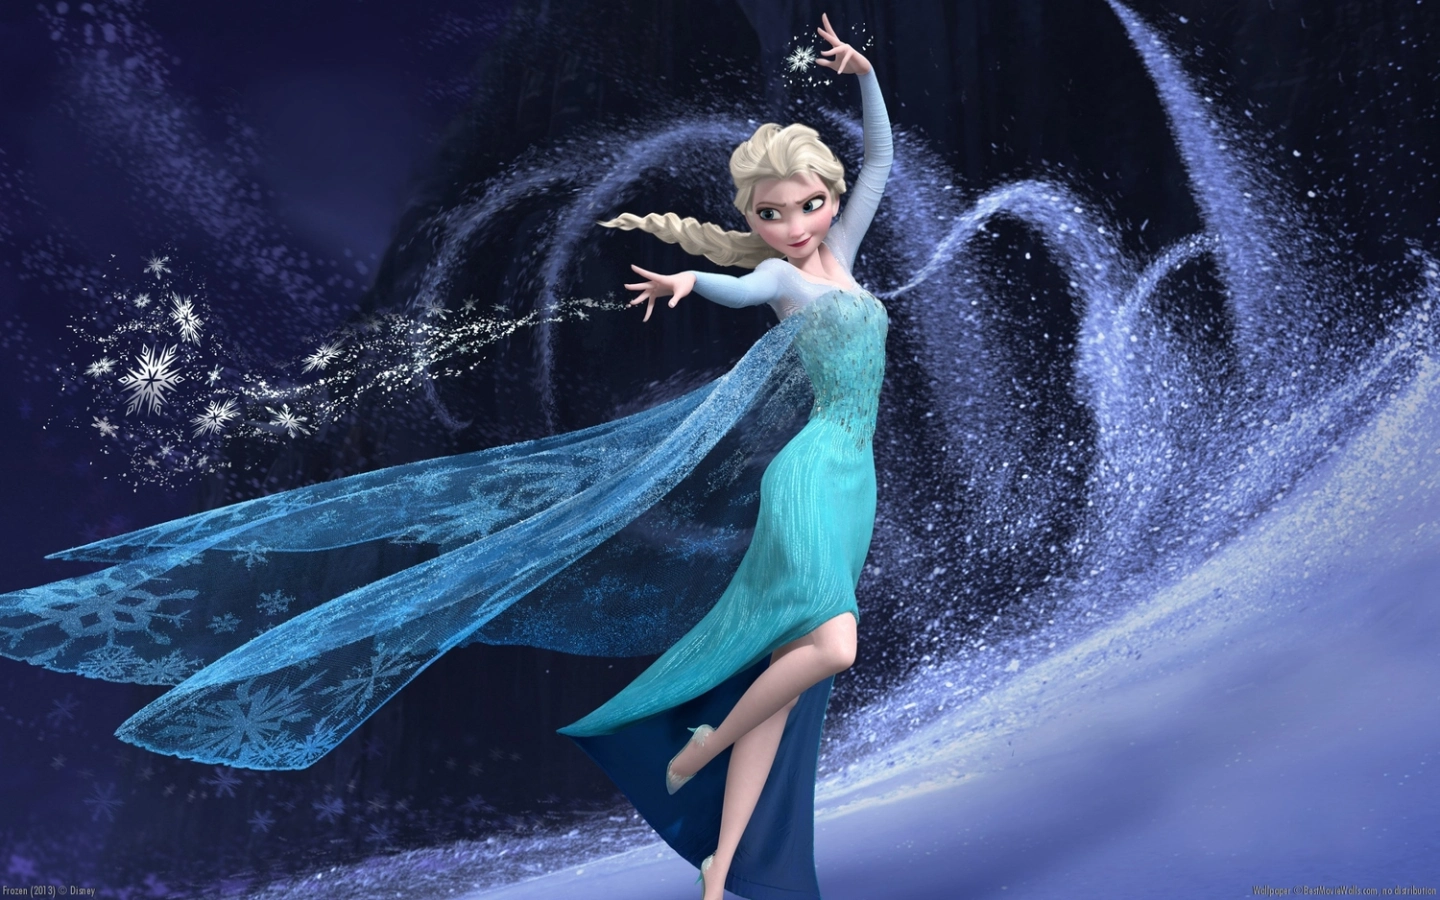 Elsa sings "Let It Go" in Frozen